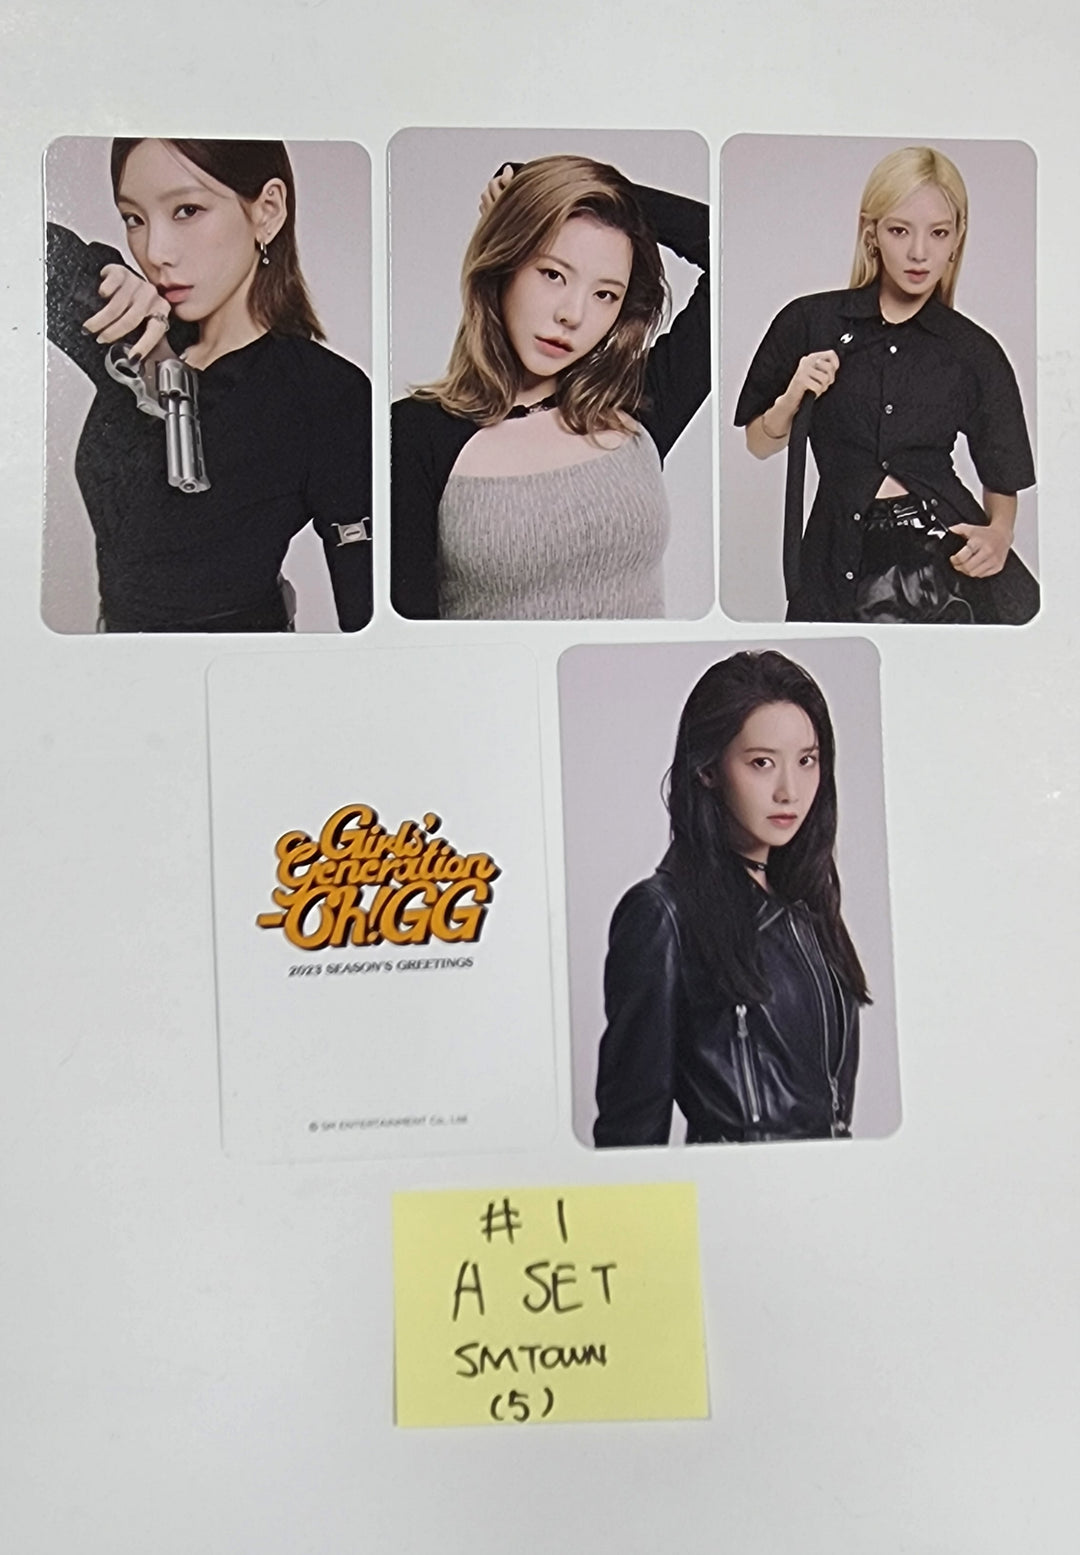 소녀시대(SNSD) "Oh!GG" - 2023 시즌그리팅 SM타운 예약판매 혜택 포토카드 세트 (5장)